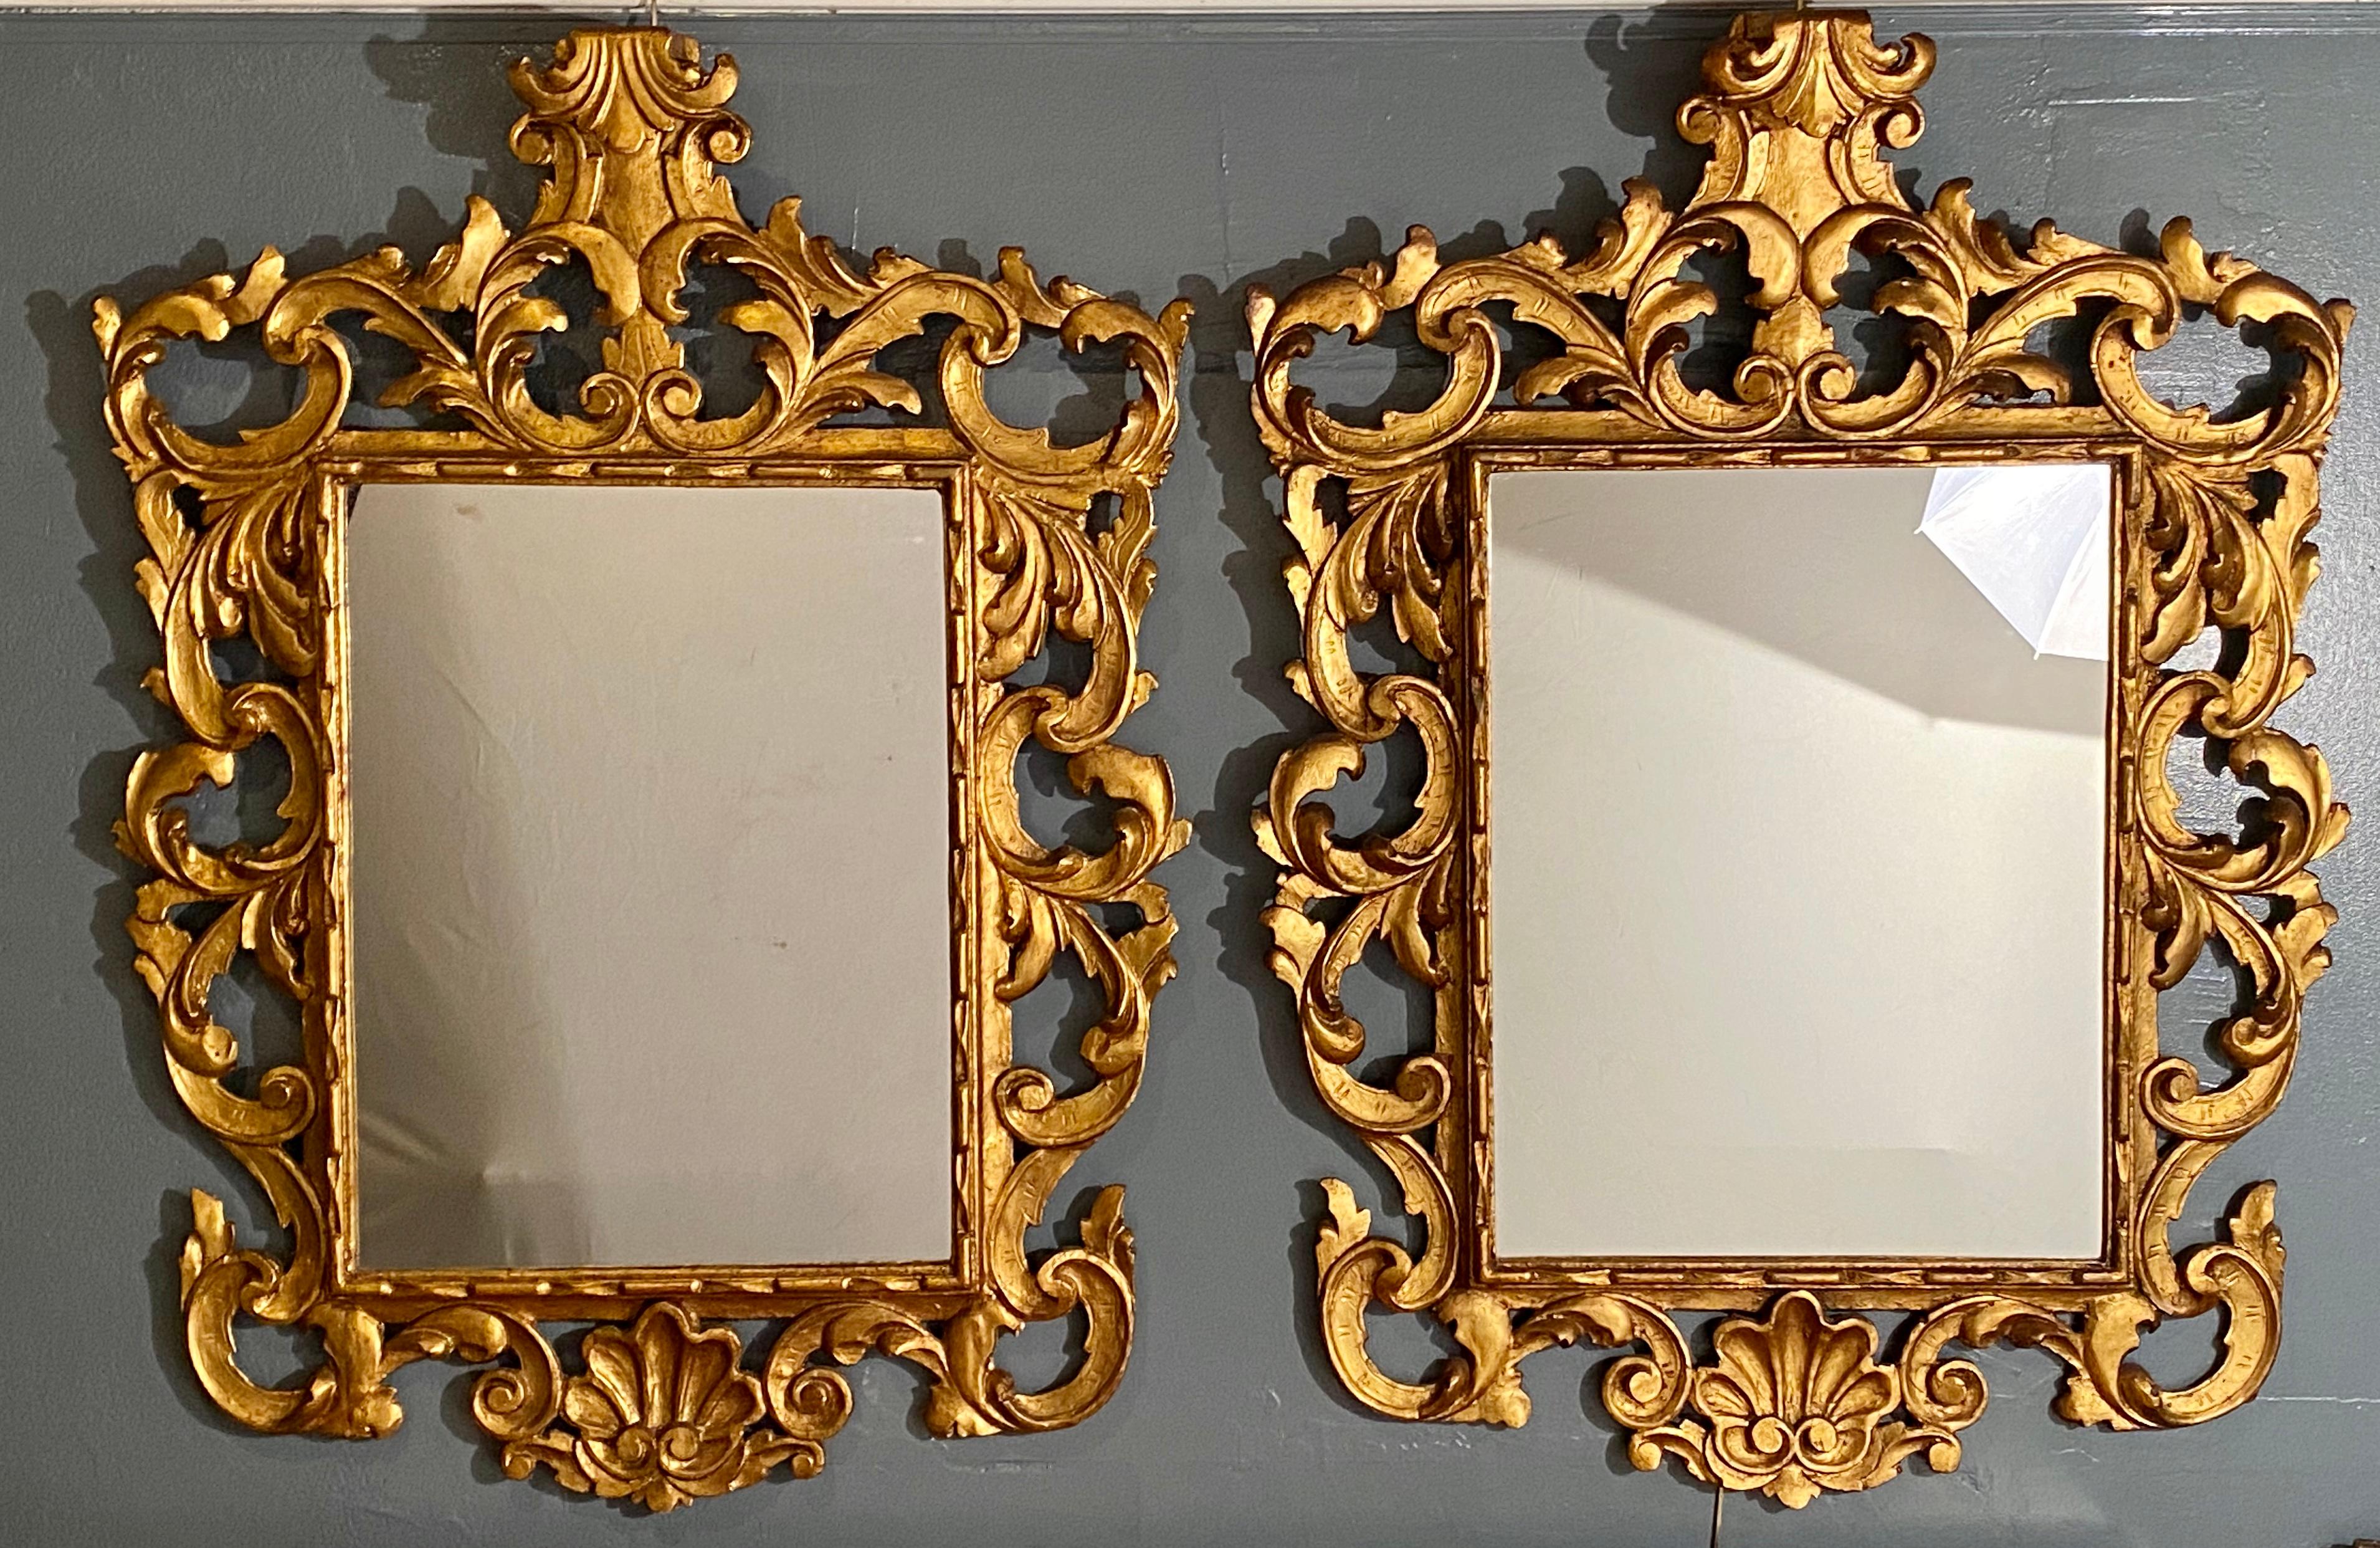 Ein Paar Wand- oder Konsolenspiegel im Rokoko-Stil. Dieses feine Paar italienische geschnitzte vergoldete Holz umgibt diese feinen klaren Mitte Spiegelplatten. Das Gesamtdesign ist eine Nachbildung des Rokokos in seiner höchsten Form und Anmut. Die